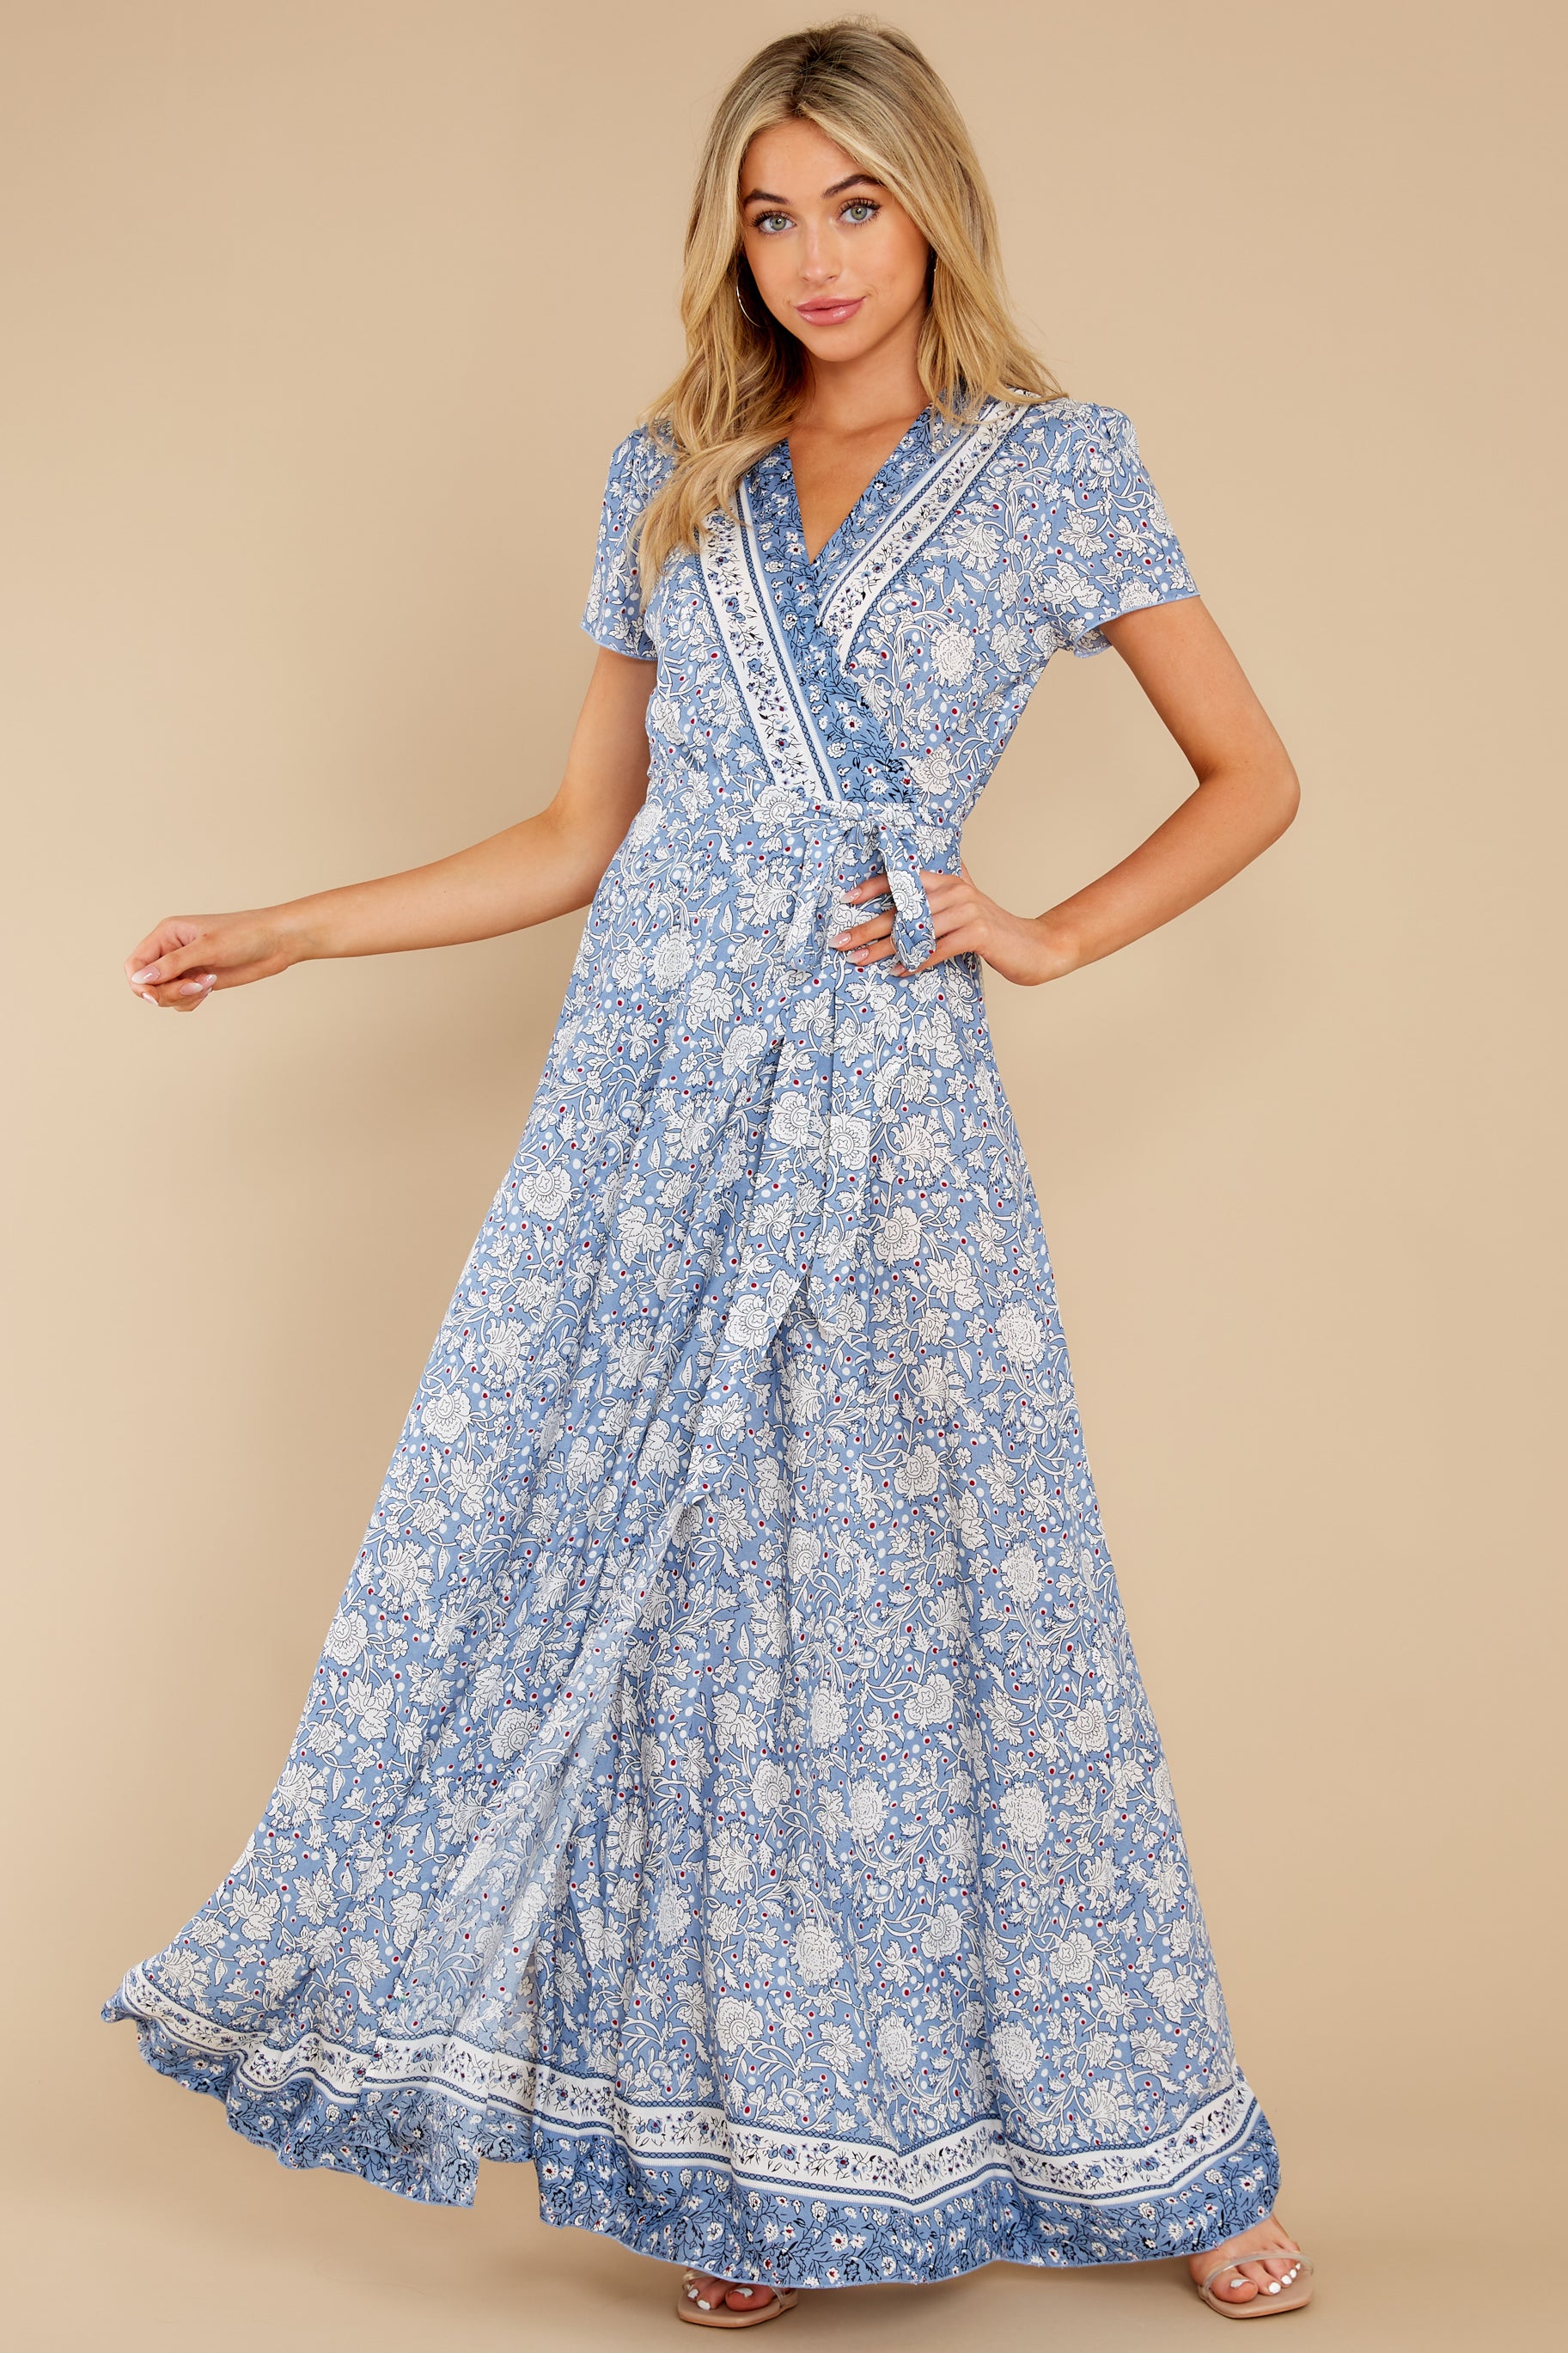 Sweet Blue Dress - Floral Print True Wrap Maxi Dress - Dress - $48.00 ...